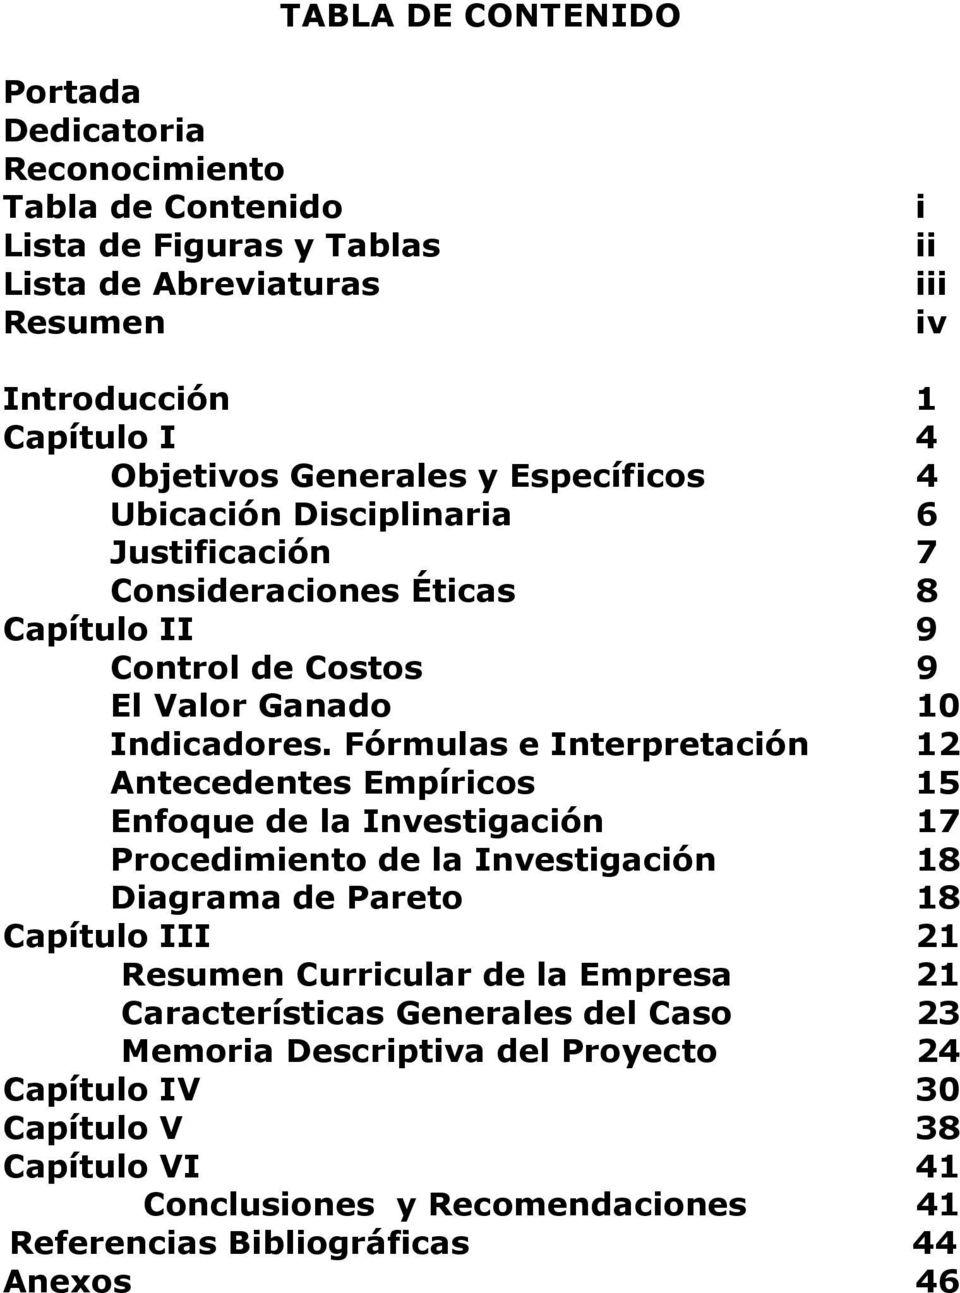 Fórmulas e Interpretación 12 Antecedentes Empíricos 15 Enfoque de la Investigación 17 Procedimiento de la Investigación 18 Diagrama de Pareto 18 Capítulo III 21 Resumen Curricular